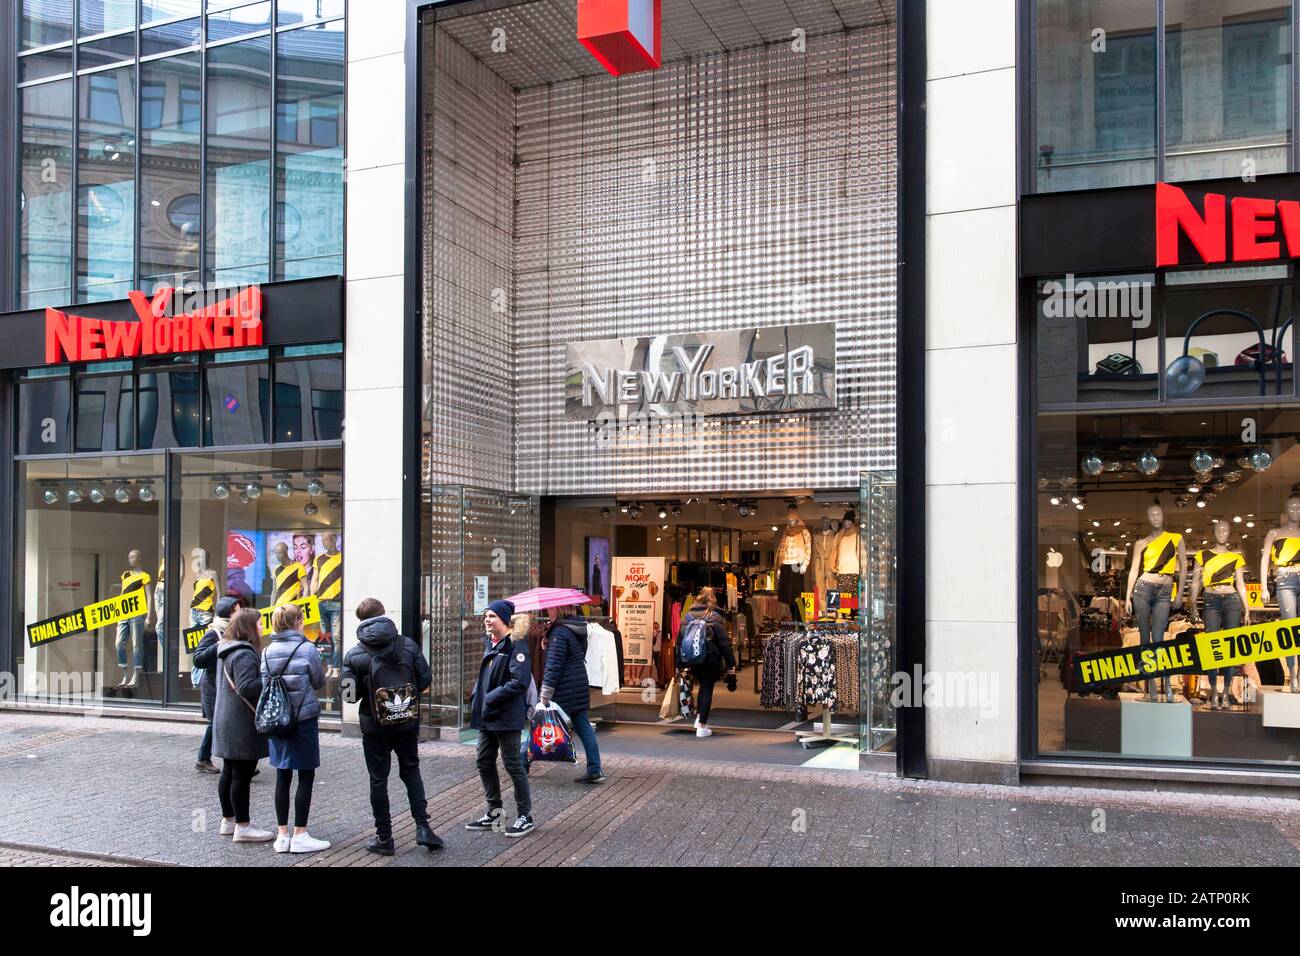 fashion store New Yorker on shopping street Schildergasse, Cologne, Germany.  Modegeschaeft New Yorker in der Einkaufsstrasse Schildergasse, Koeln, De Stock Photo